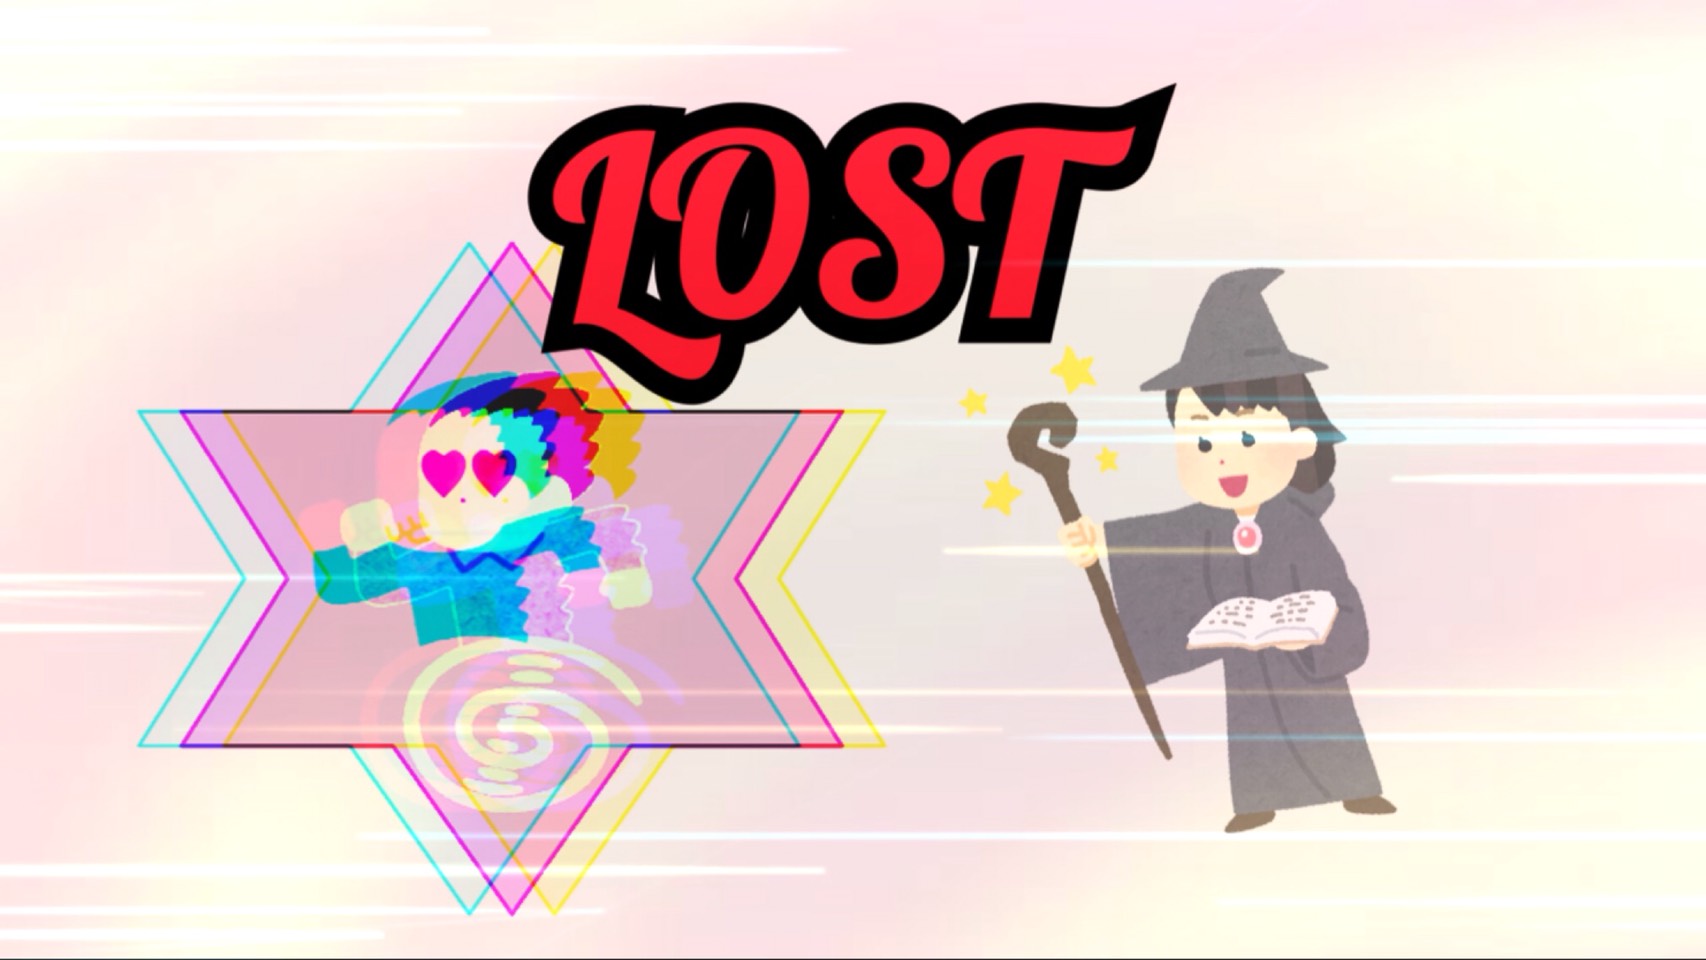 「LOST」のイメージ